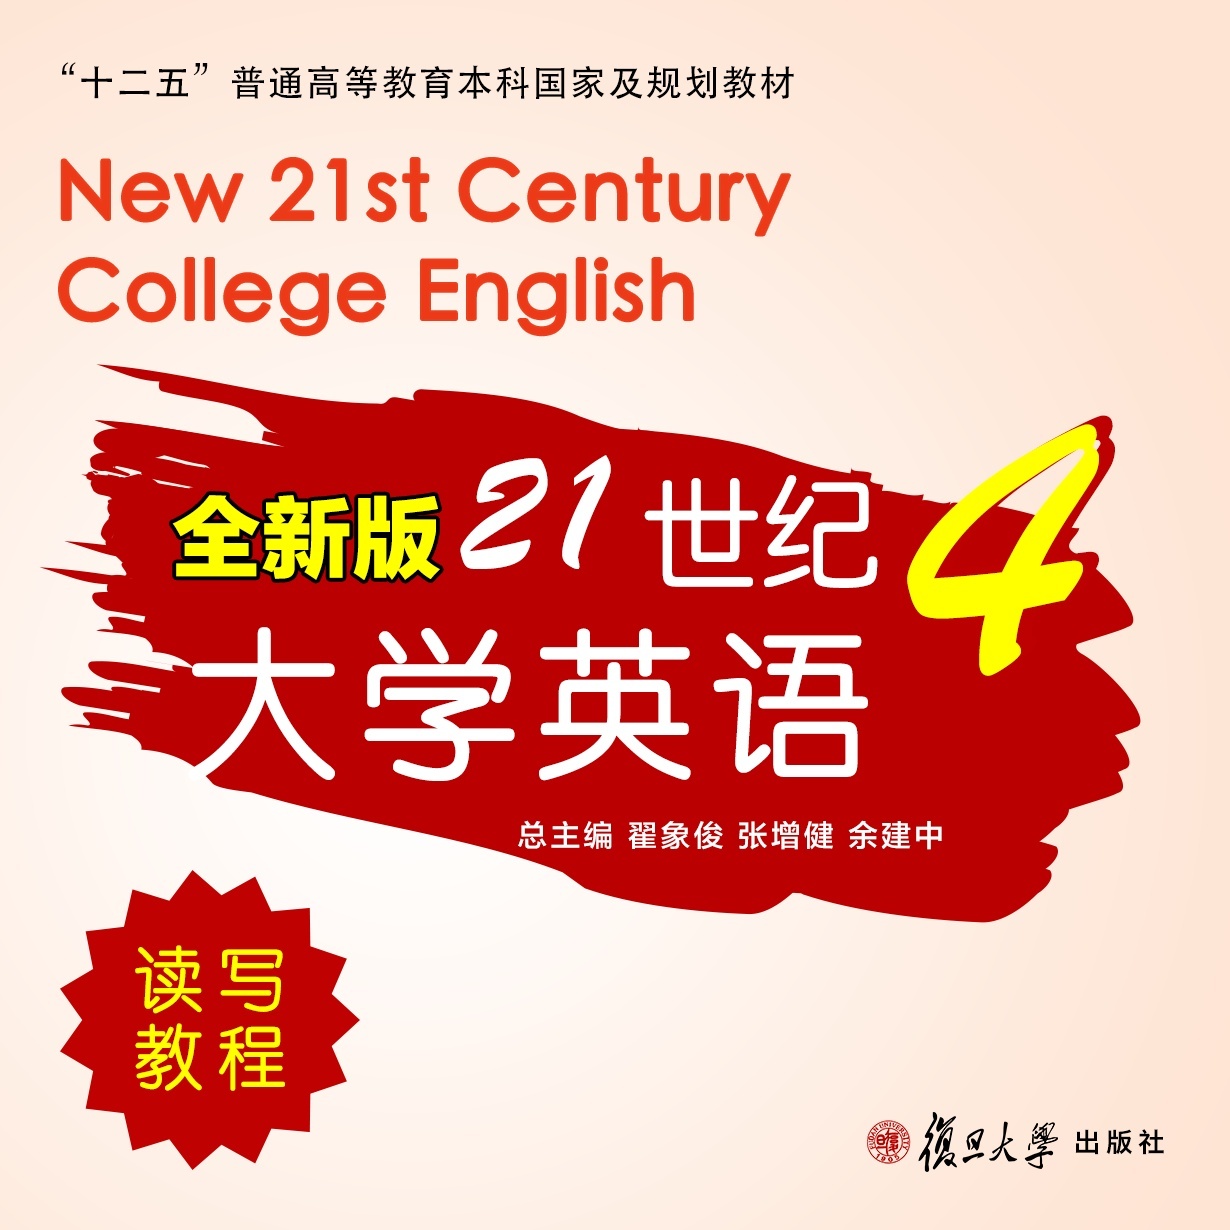 【视听包】全新版21世纪大学英语读写教程4.mp3